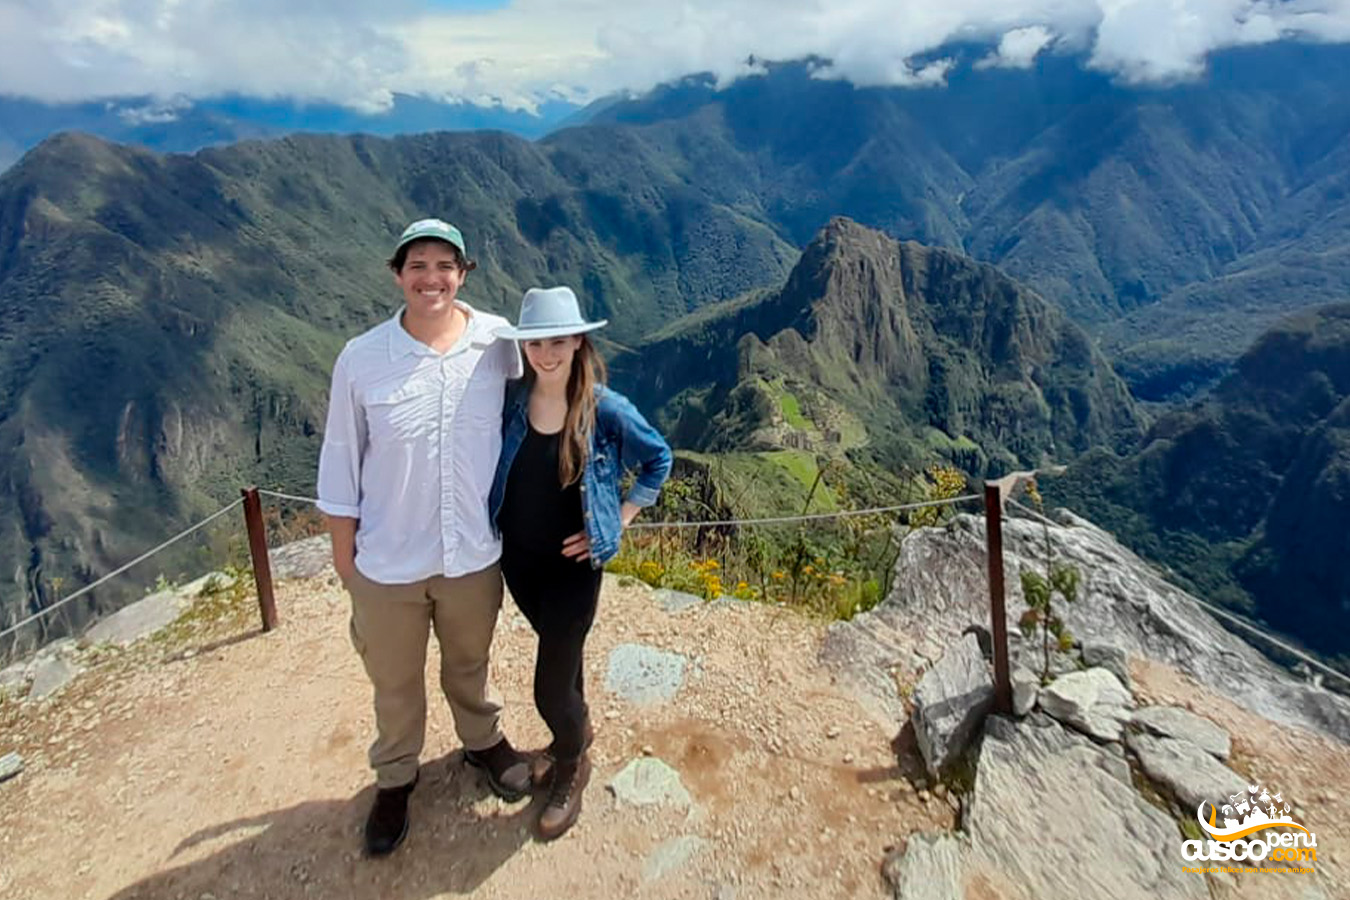 Vista de la ciudad inca de Machu Picchu desde la cima de la montaña Machu Picchu. Fuente: CuscoPeru.com